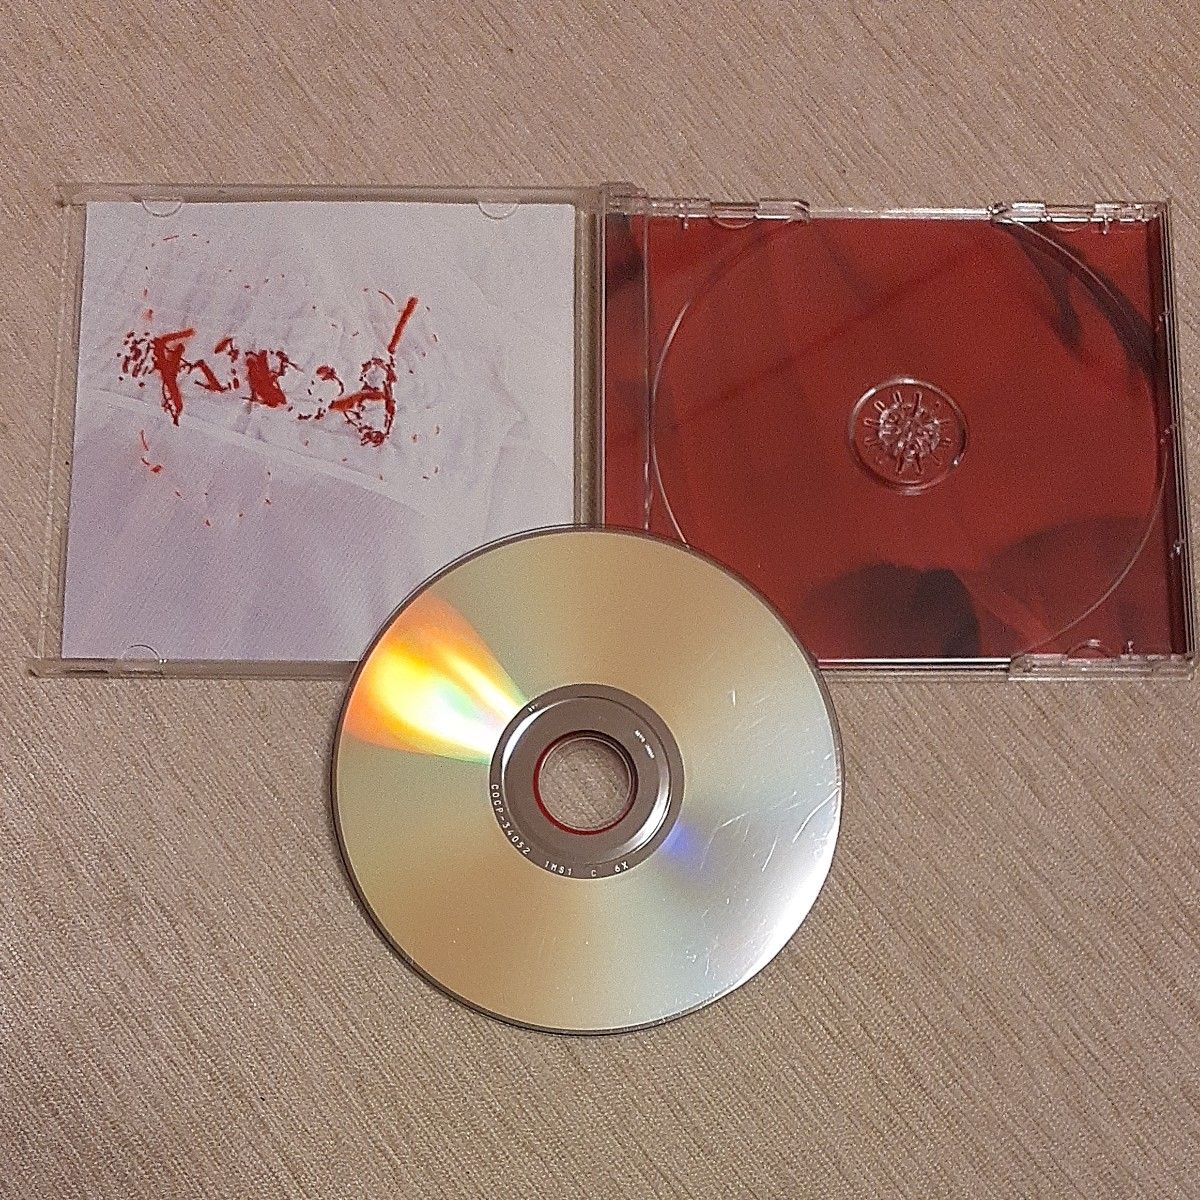 一青窈　「Bestyo」 CD